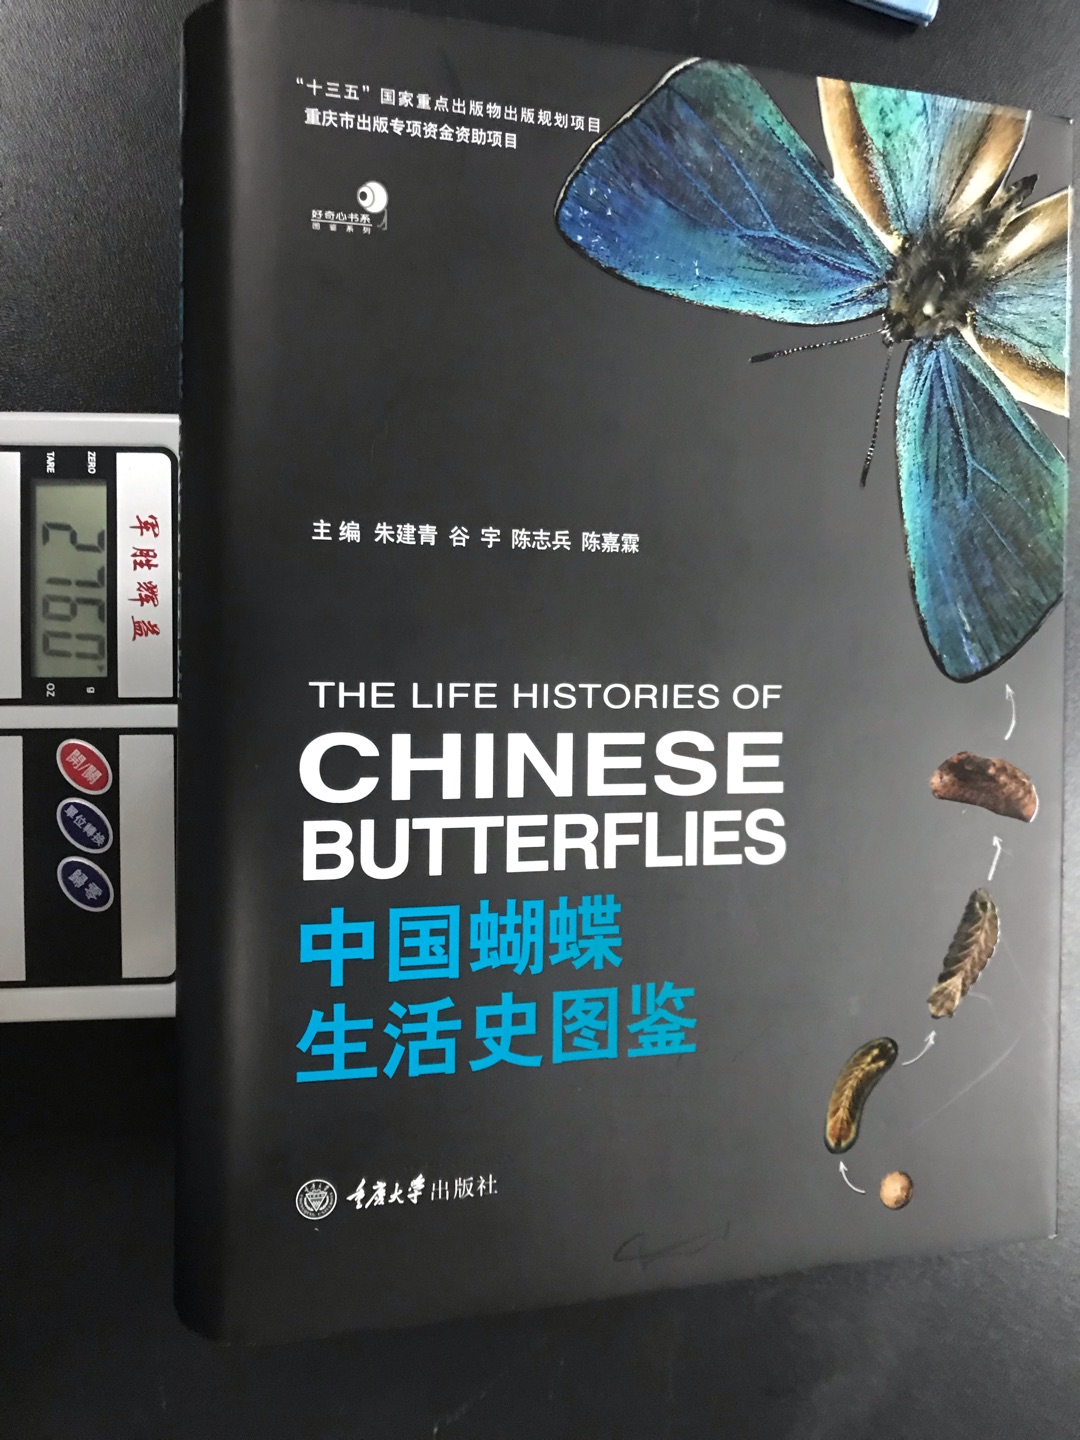 中国蝴蝶生活史图鉴这本书的重量为2760克封面很好看，拍的照片很好看，画的图也很好看，这本书印刷的也很好看，出版社为重庆大学出版社，是十三五国家重点出感悟出版规划项目所资助发行的图书。